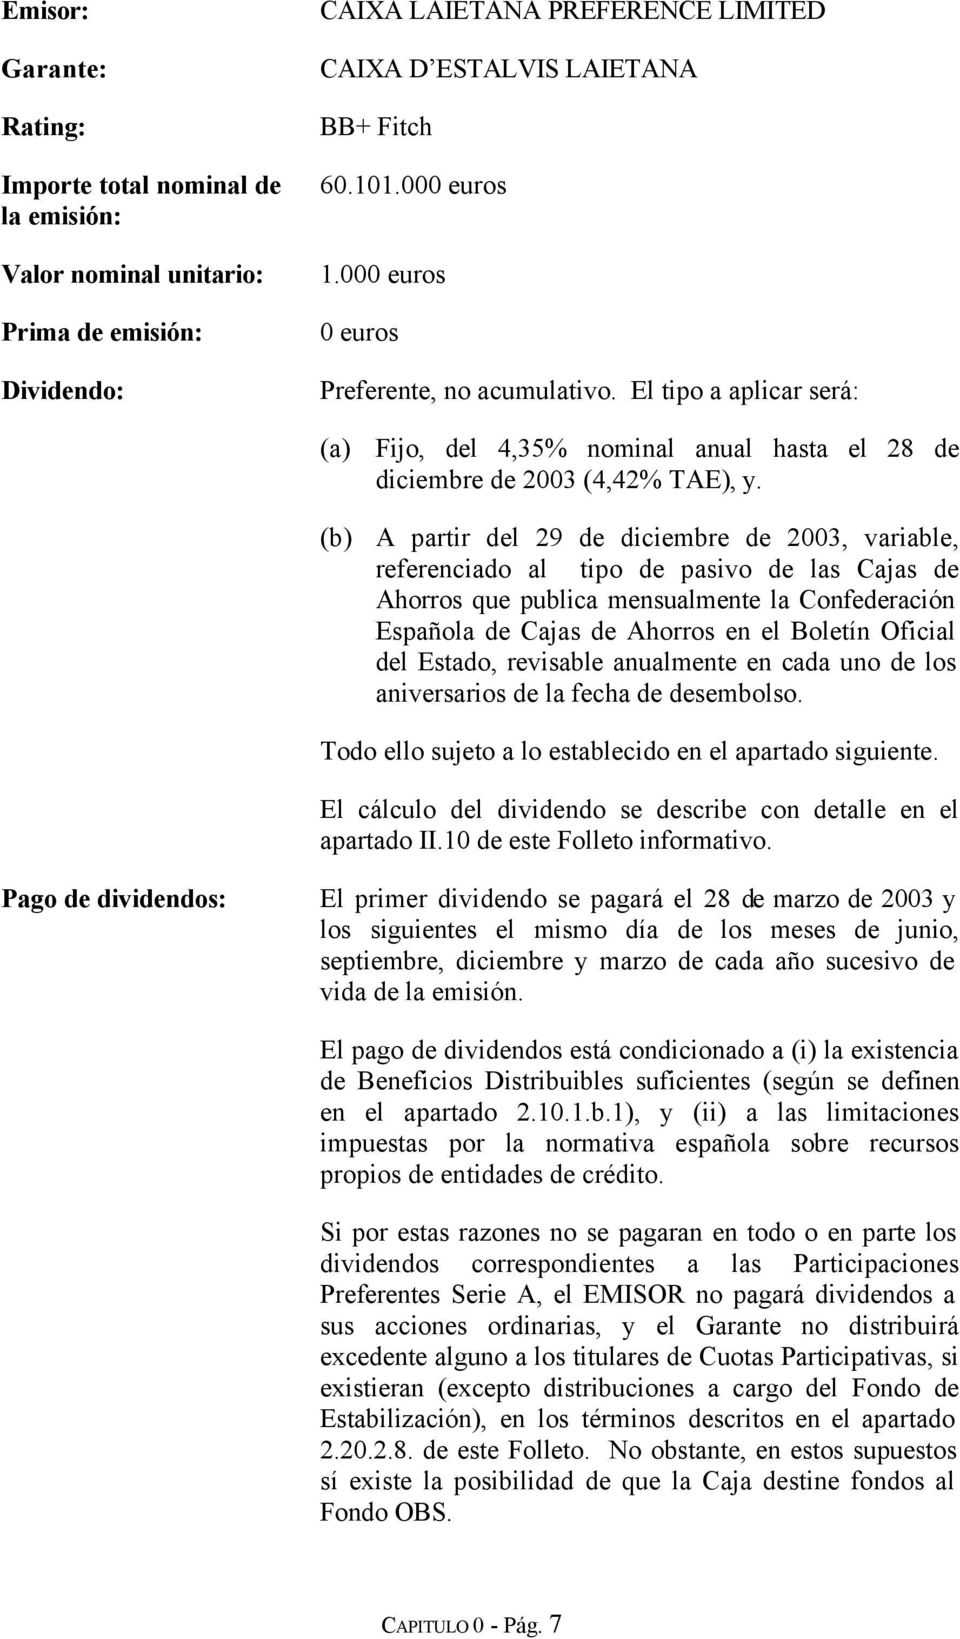 (b) A partir del 29 de diciembre de 2003, variable, referenciado al tipo de pasivo de las Cajas de Ahorros que publica mensualmente la Confederación Española de Cajas de Ahorros en el Boletín Oficial